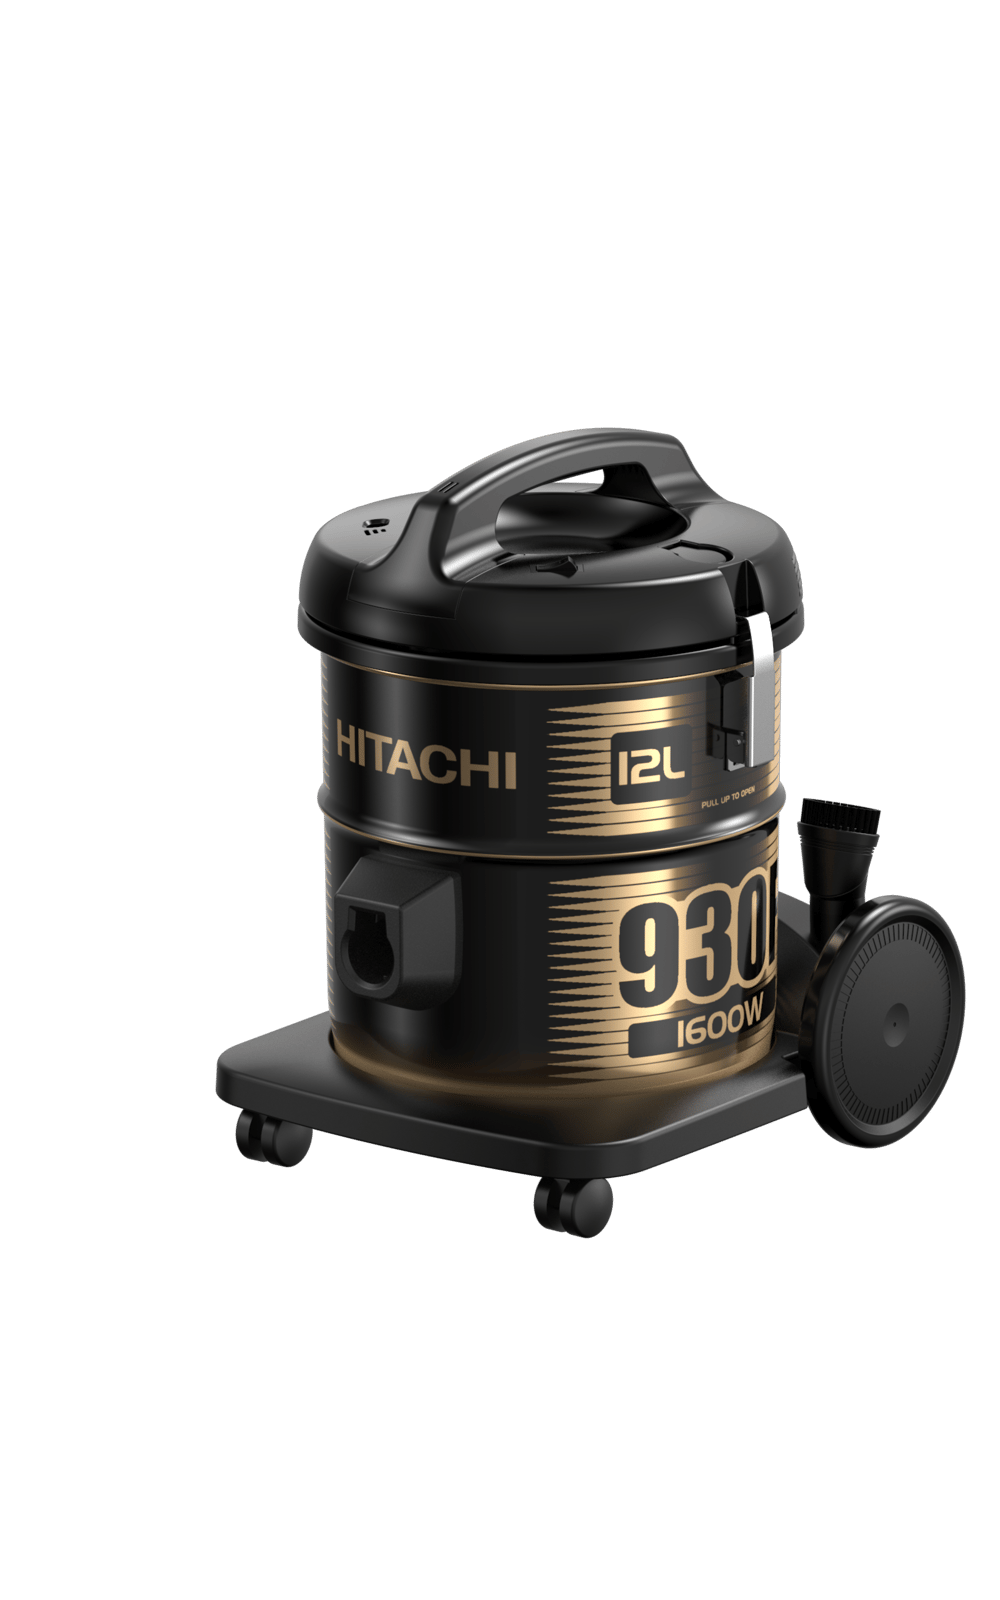 Hitachi DVC, 12L, 1600W, Black - Modern Electronics